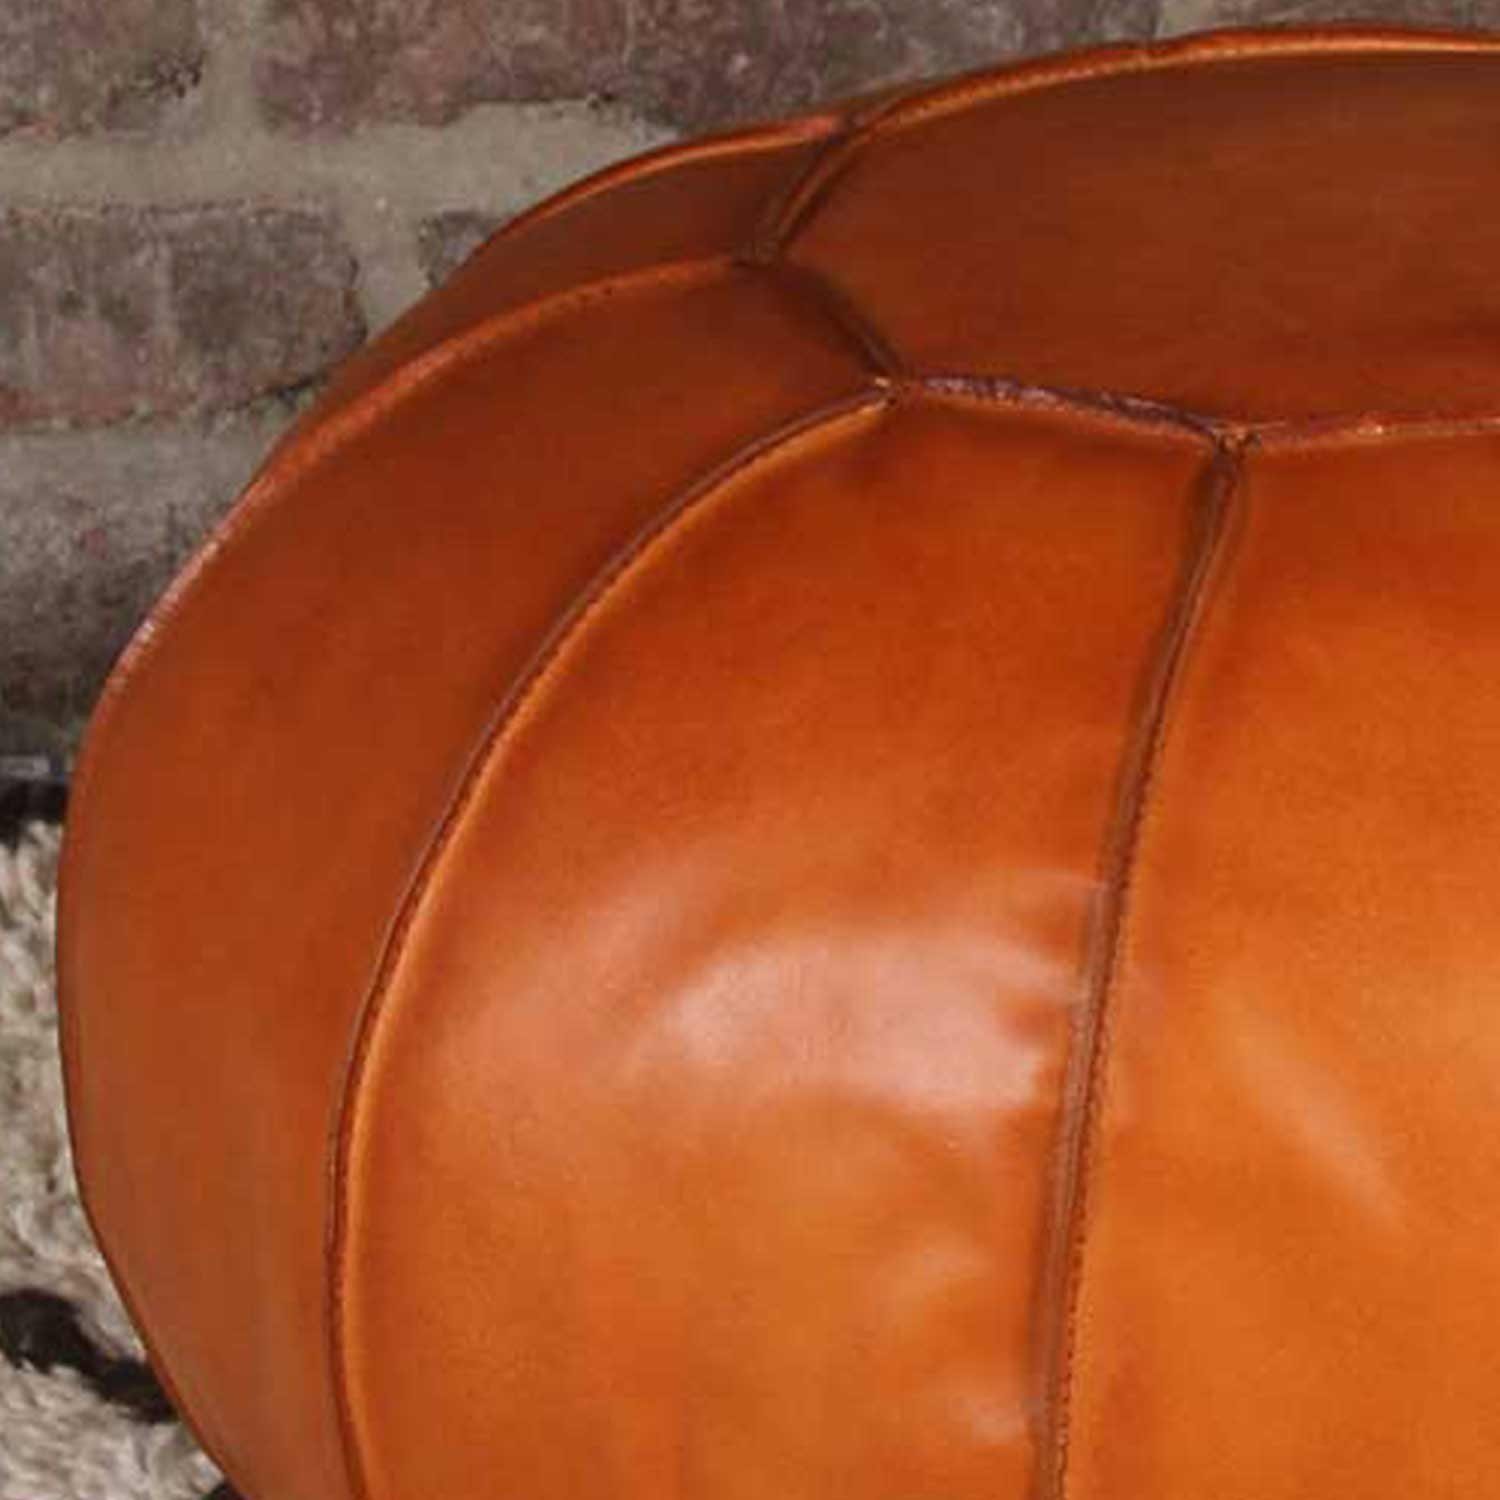 Casa Moro Pouf Orientalisches Leder-Sitzkissen Sunyata braun 45x45x45cm  Handgefertigt (Echt-Leder Sitz-Hocker quadratisch), ein Polsterhocker für